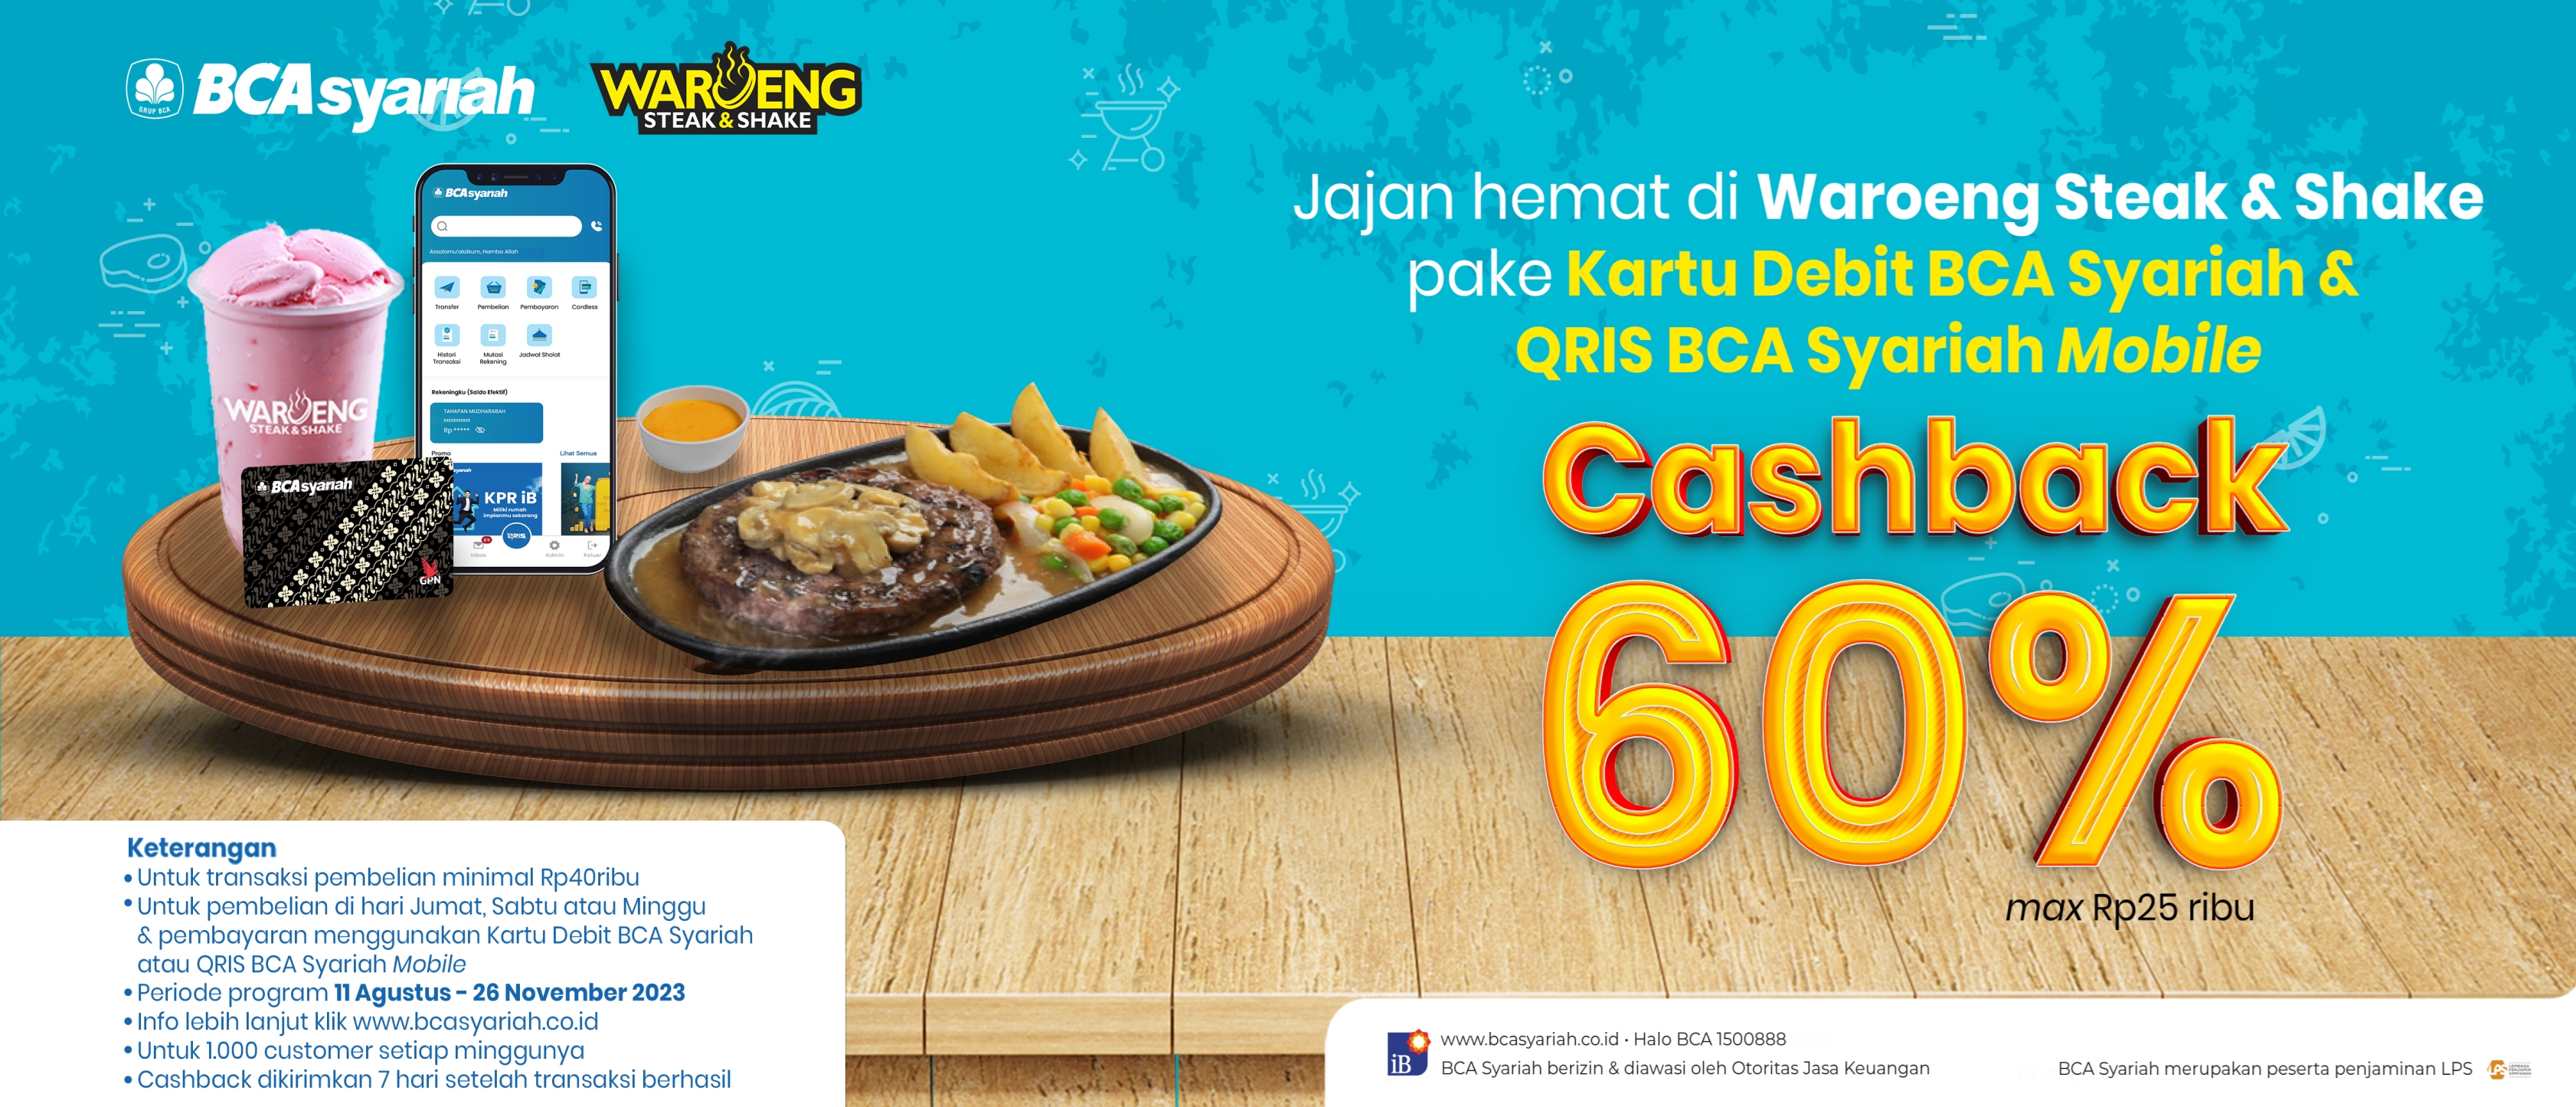 Lebih Hemat! Cashback 60% dengan Kartu Debit BCA Syariah & QRIS BCA Mobile Hanya di Waroeng Steak & Shake